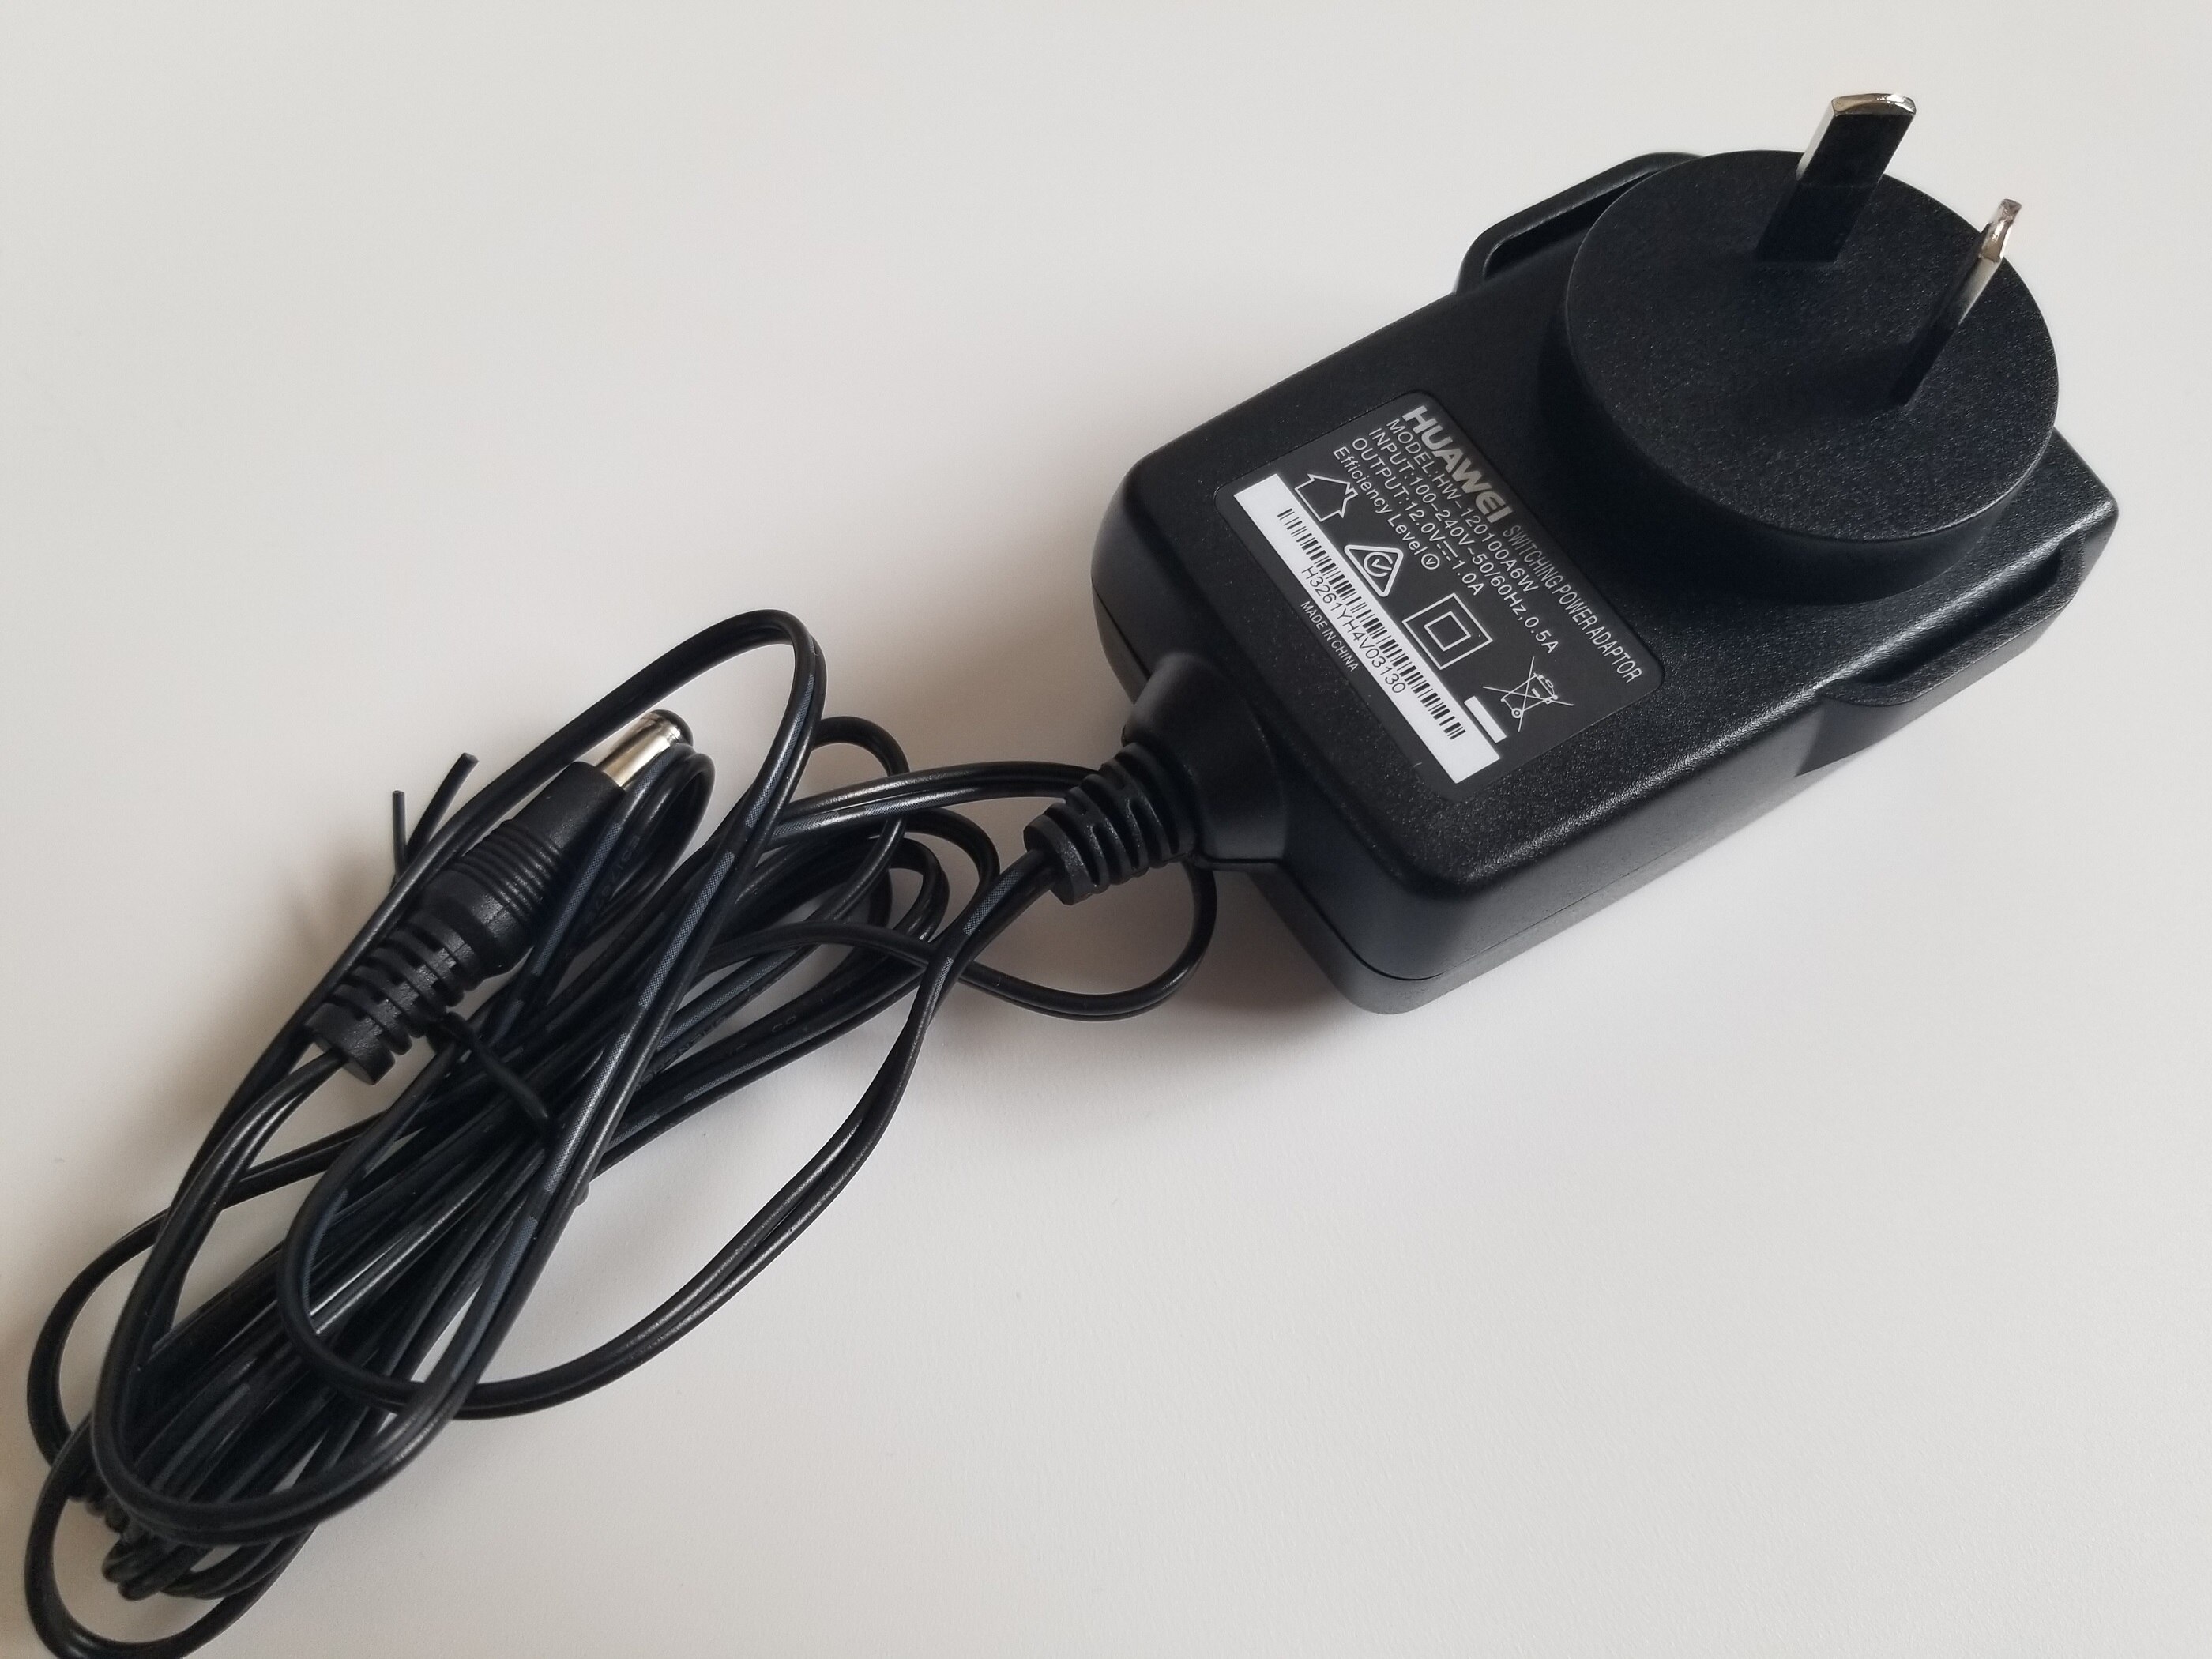 HUAWEI ADAPTER EU US EN US Plug Power Adapter OUTPUT 12V--1A: AU PLUG